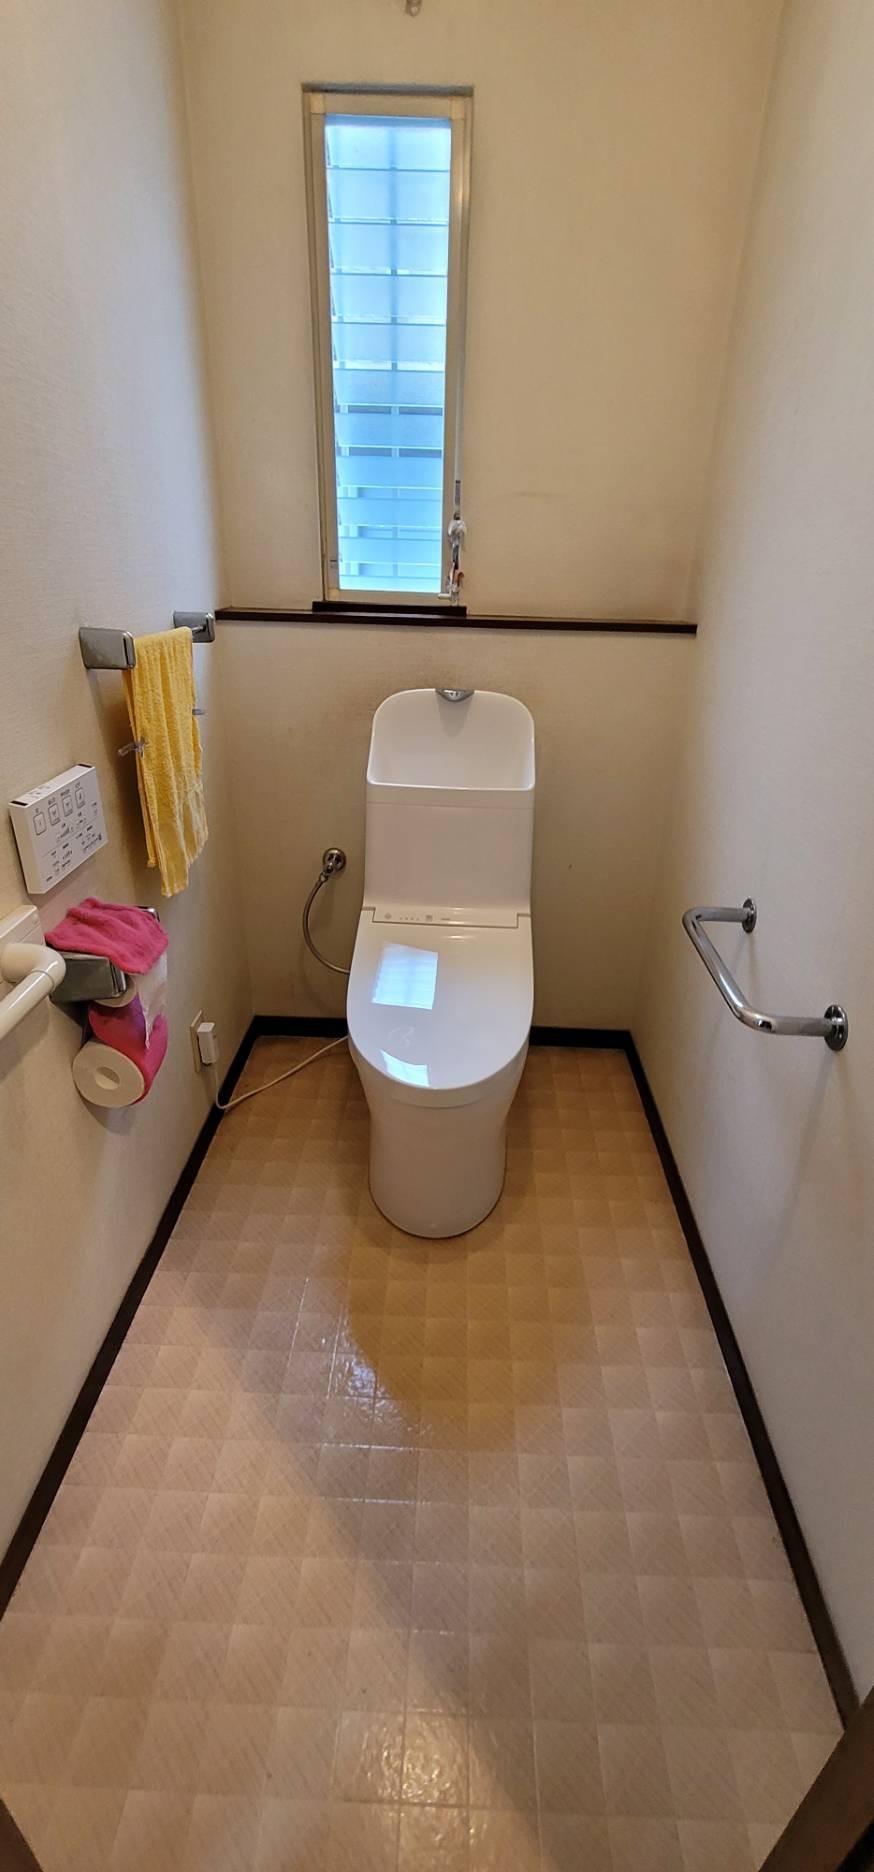 名古屋市緑区  トイレの水漏レの為取り替えしました。 画像